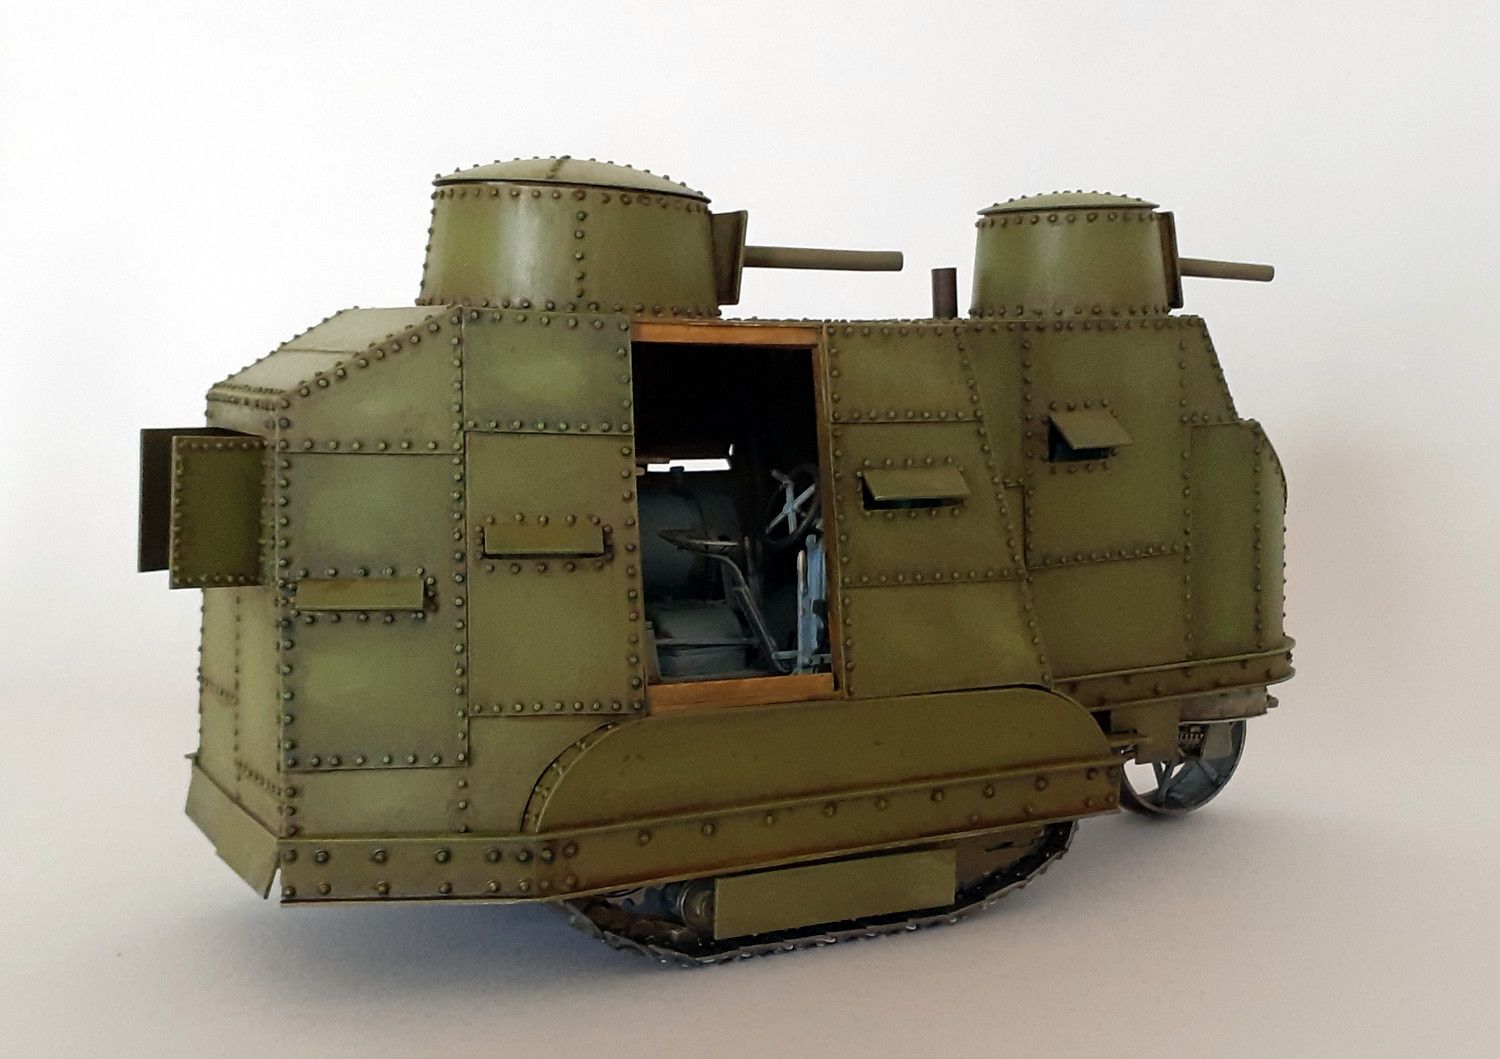 Caterpillar G9 : 1er tank US de l'Histoire [base tracteur Holt Roden + scratch] de Lostiznaos 663be0475ac5d